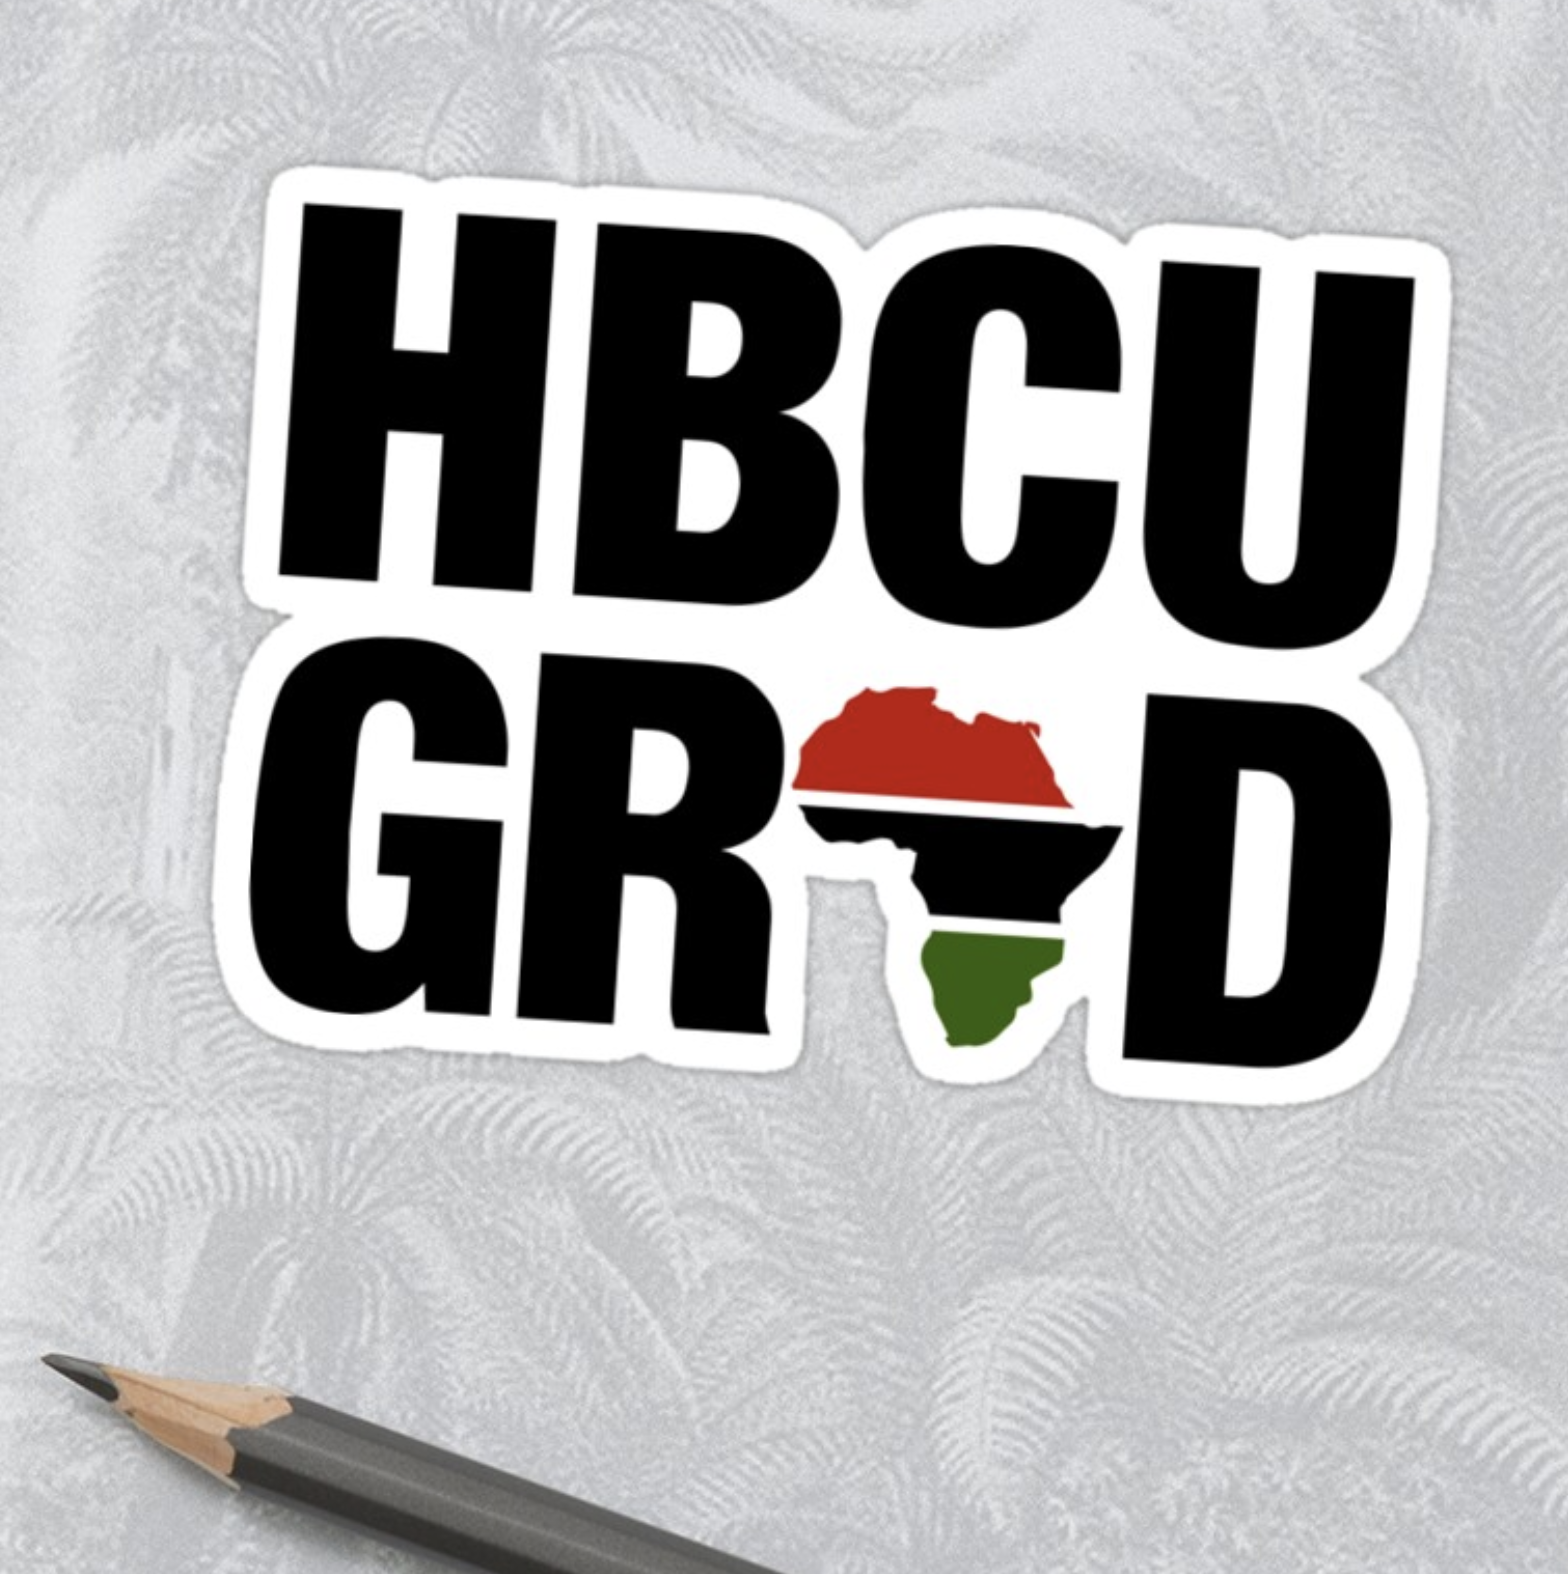 HBCU Grad Africa